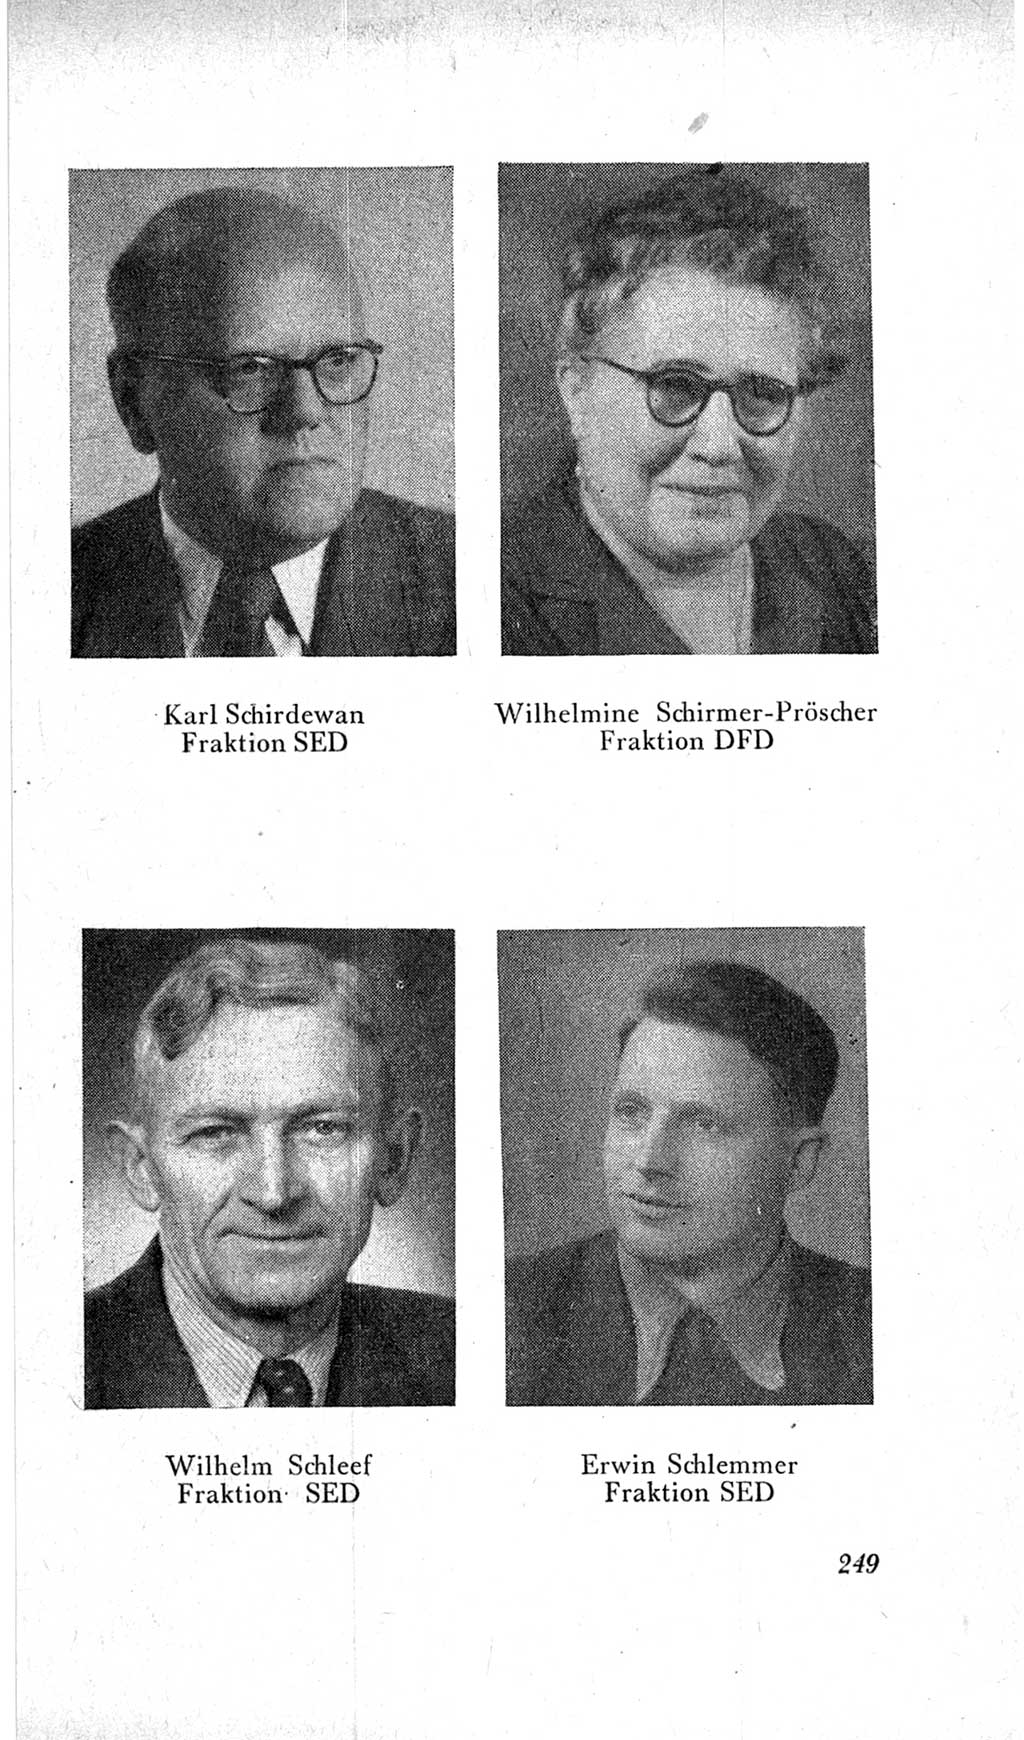 Handbuch der Volkskammer (VK) der Deutschen Demokratischen Republik (DDR), 2. Wahlperiode 1954-1958, Seite 249 (Hdb. VK. DDR, 2. WP. 1954-1958, S. 249)